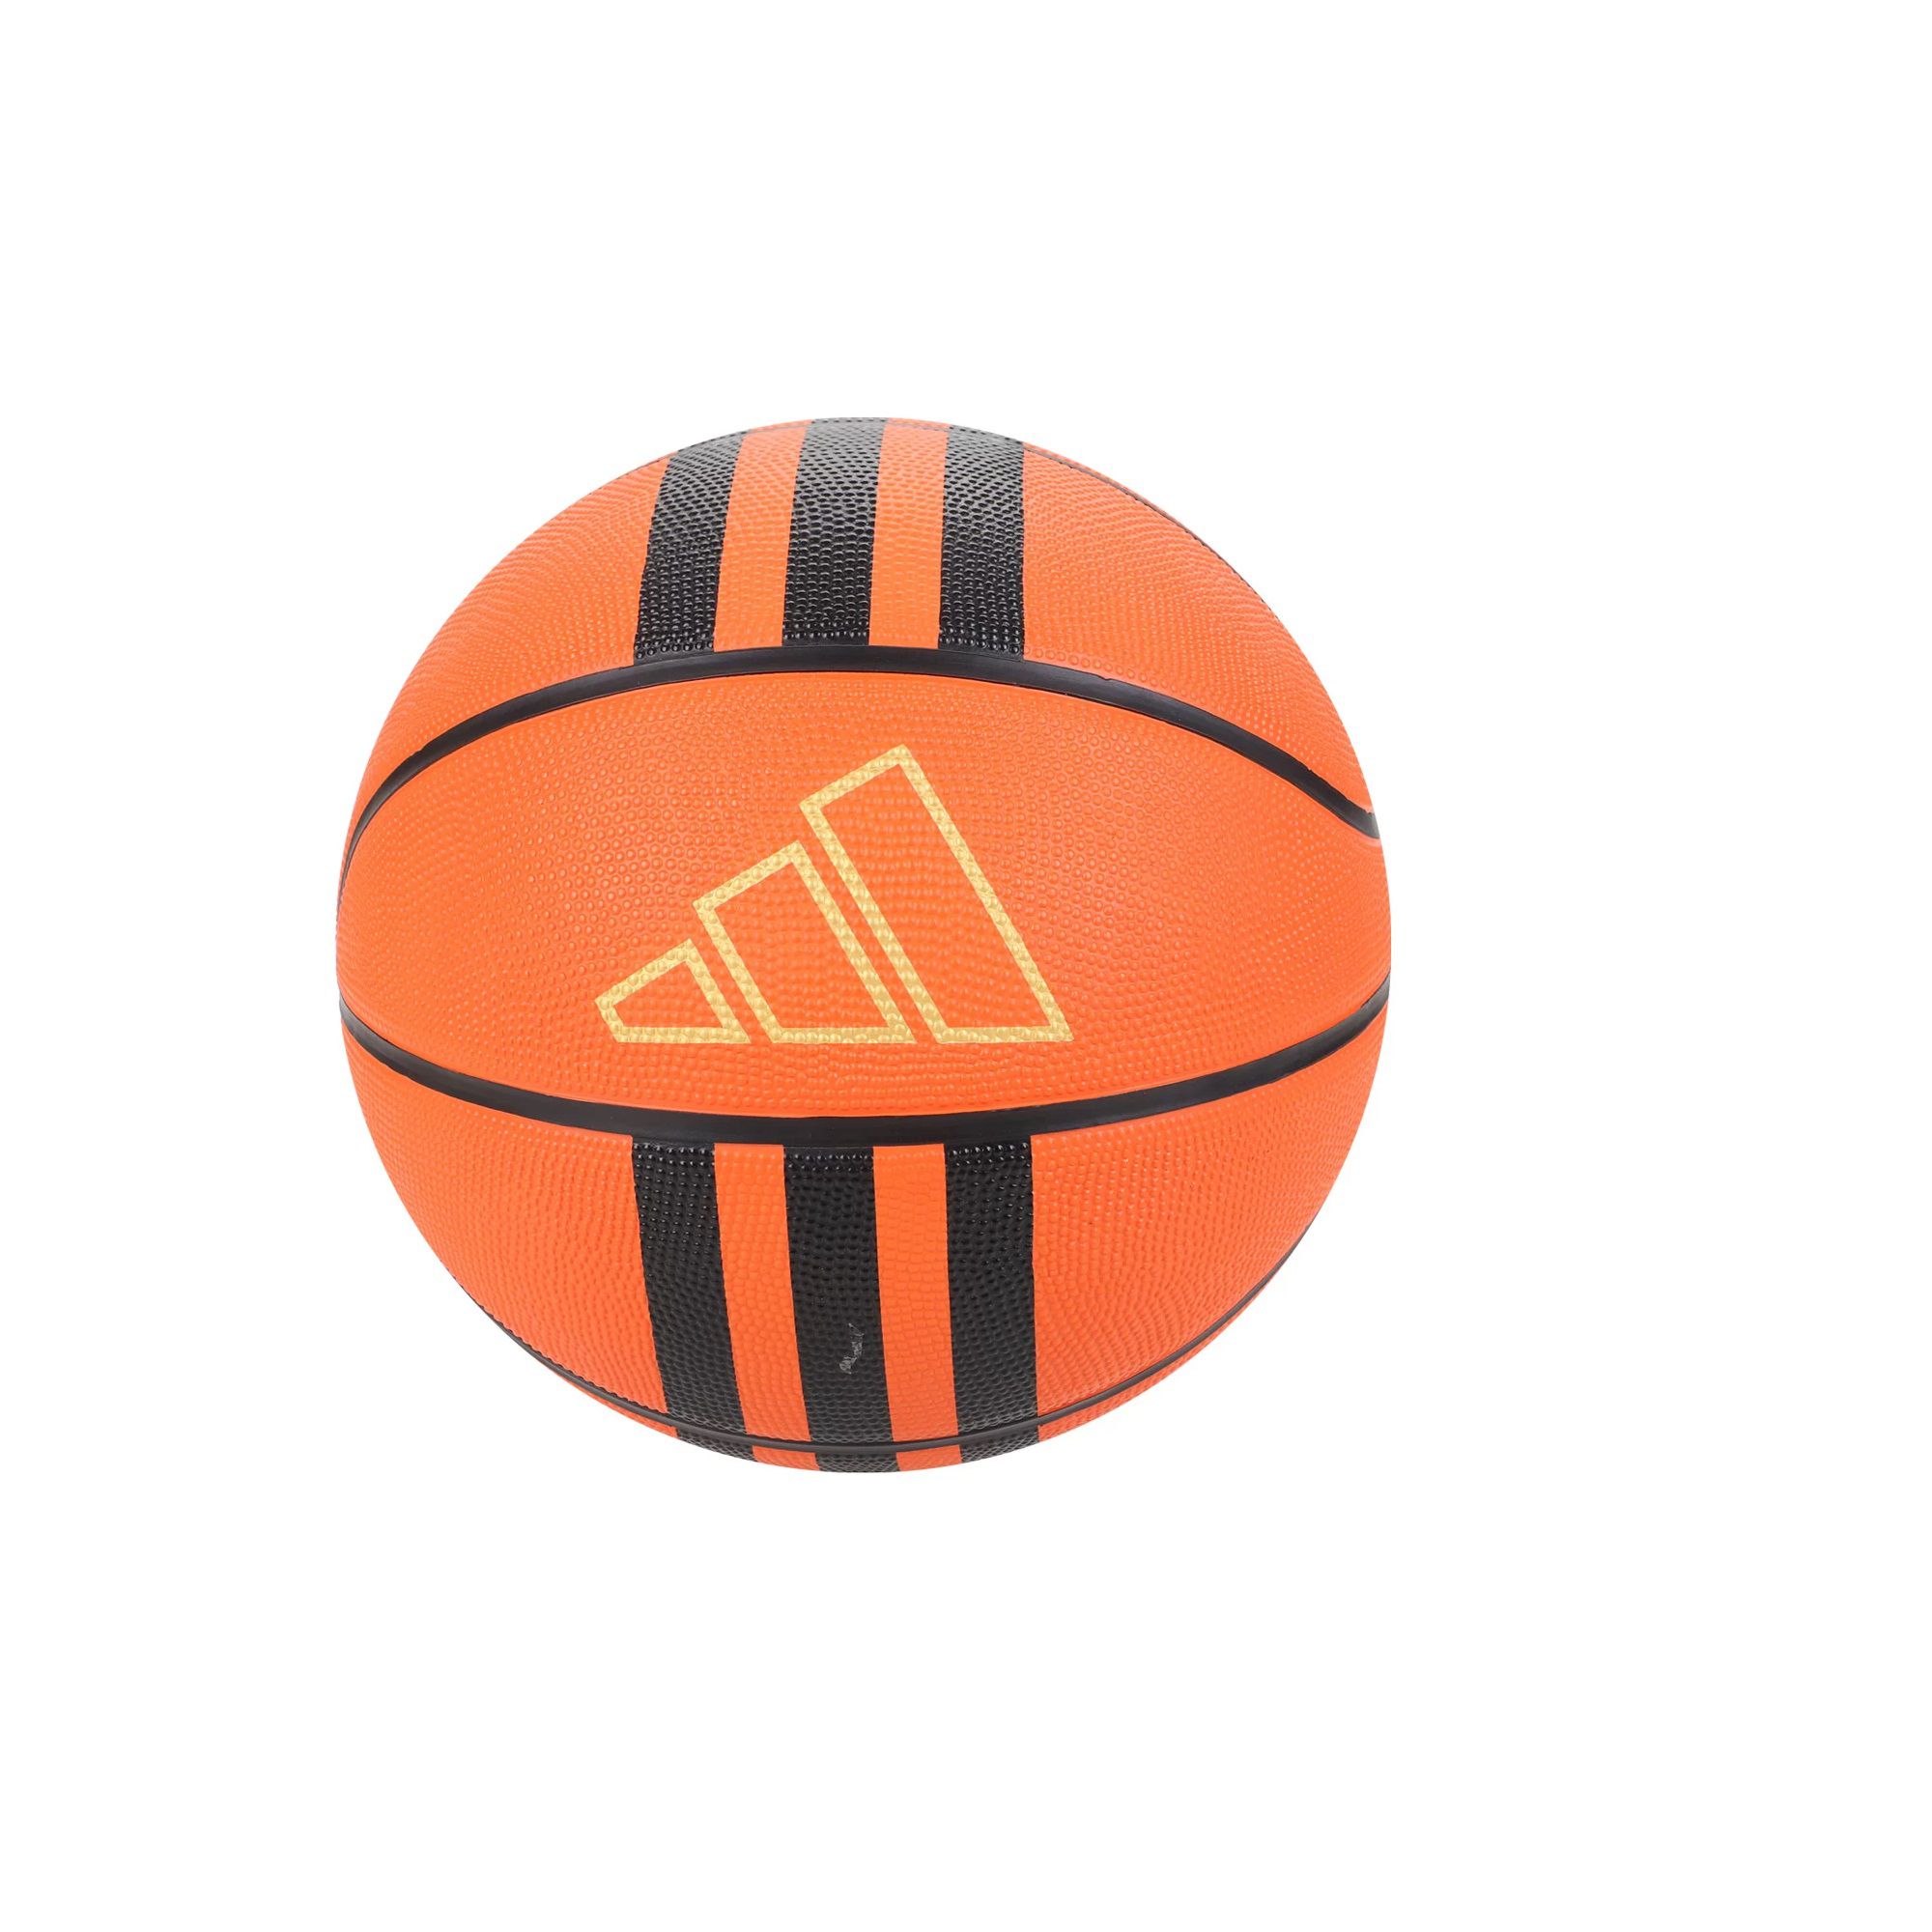 Bola Basquete Adidas 3 Listras Laranja Preto - Claus Sports - Loja de  Material Esportivo - Tênis, Chuteiras e Acessórios Esportivos